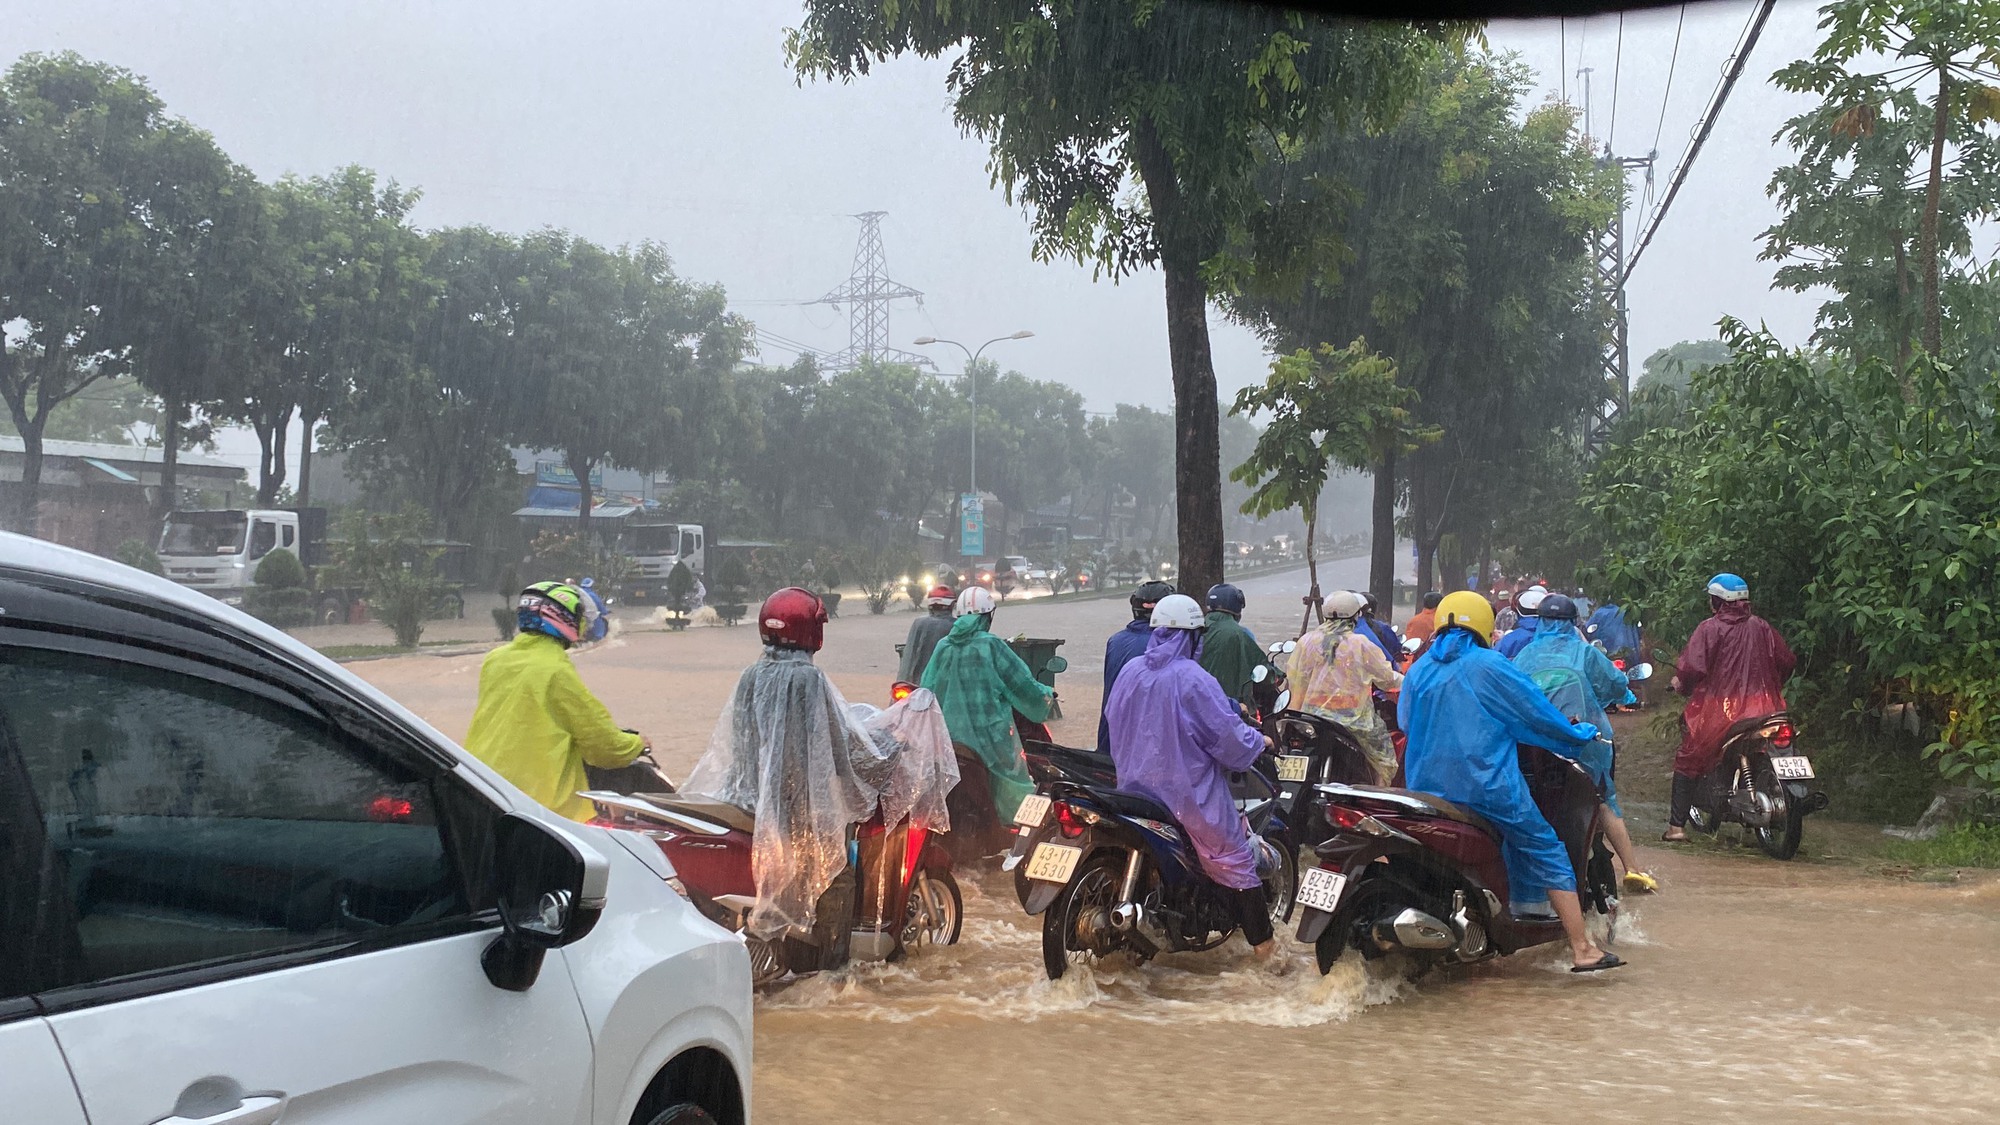 Đường phố Đà Nẵng thành sông sau mưa lớn, ô tô bì bõm lội nước - Ảnh 1.